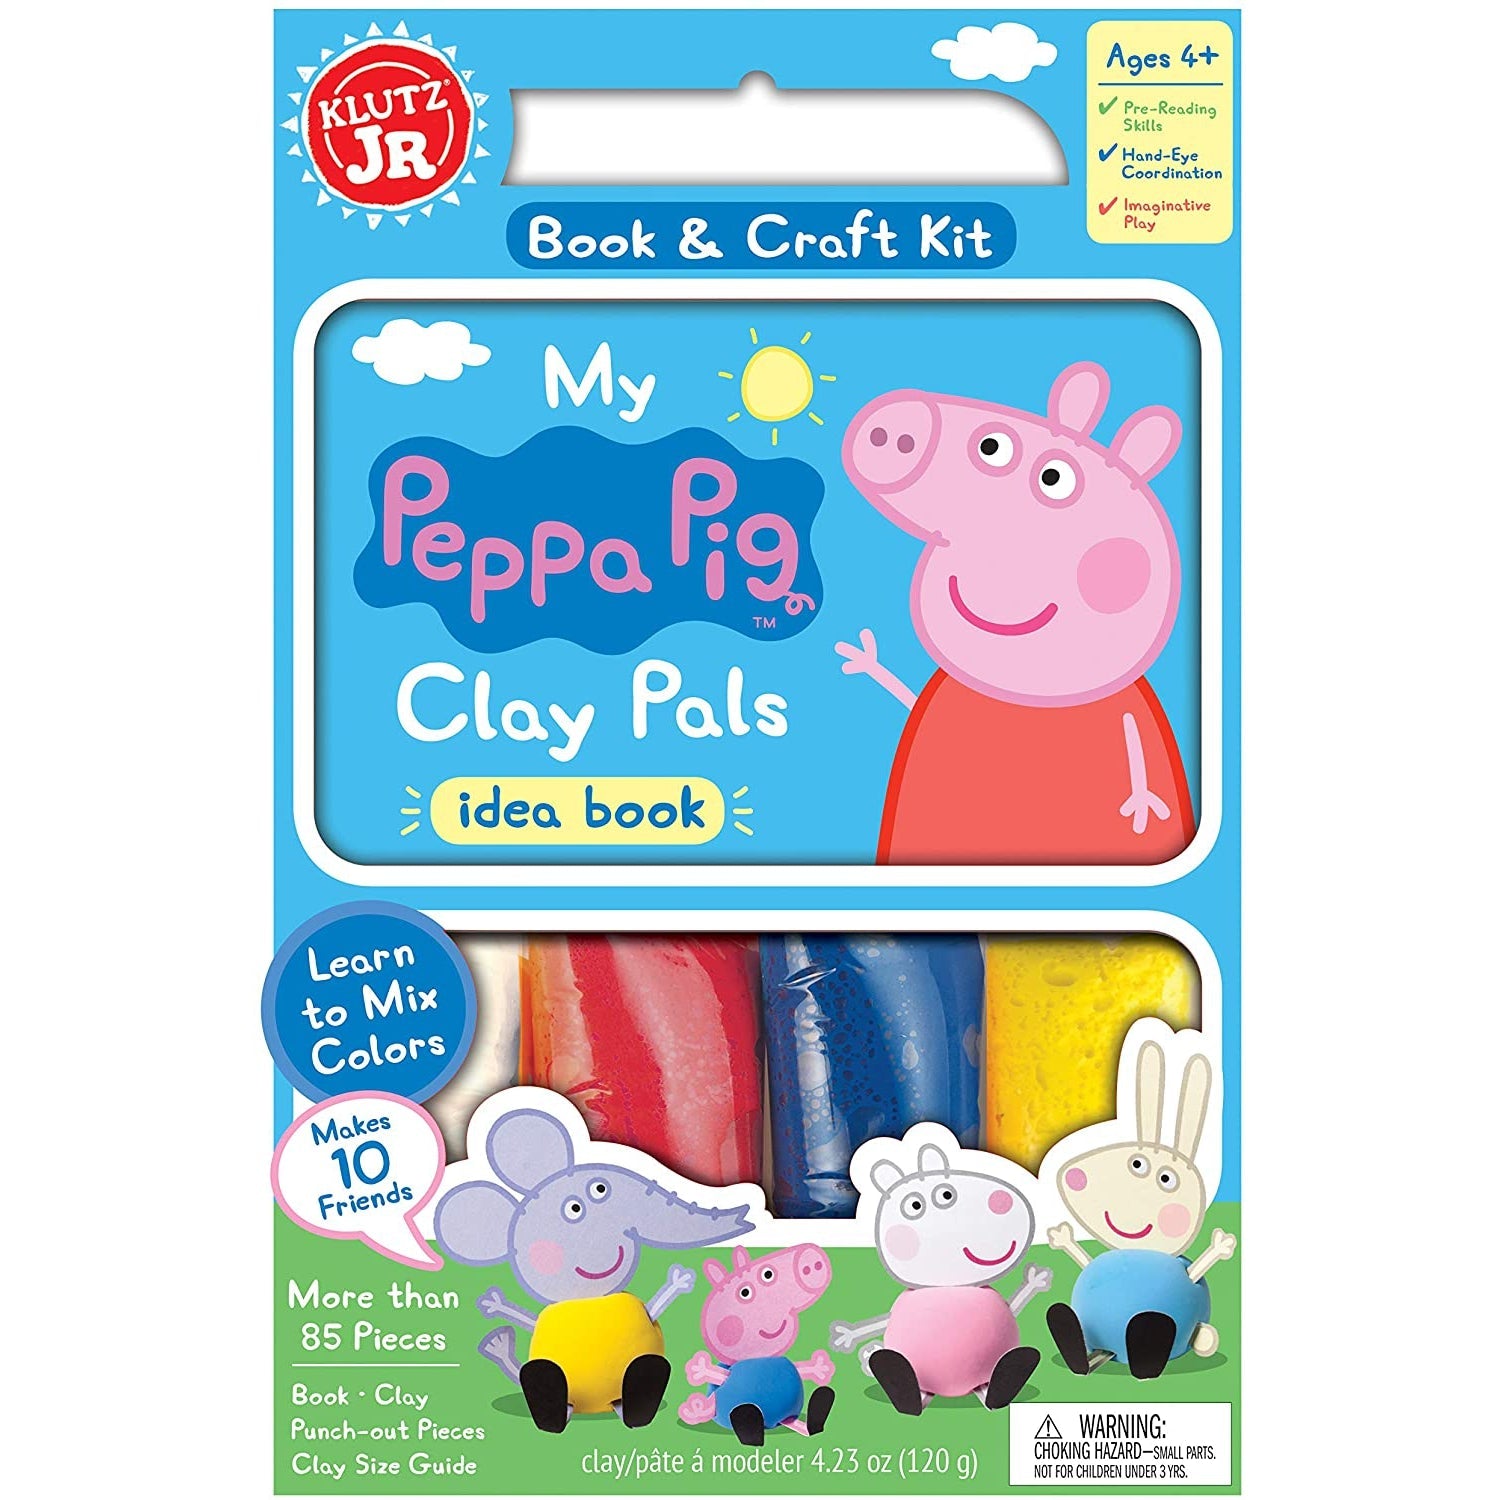 http://www.littlegiantkidz.com/cdn/shop/products/Klutz-My-Peppa-Pig-Clay-Pals-Jr_-Craft-Kit-Makes-10-Friends-KLUTZ.jpg?v=1651884544&width=2048